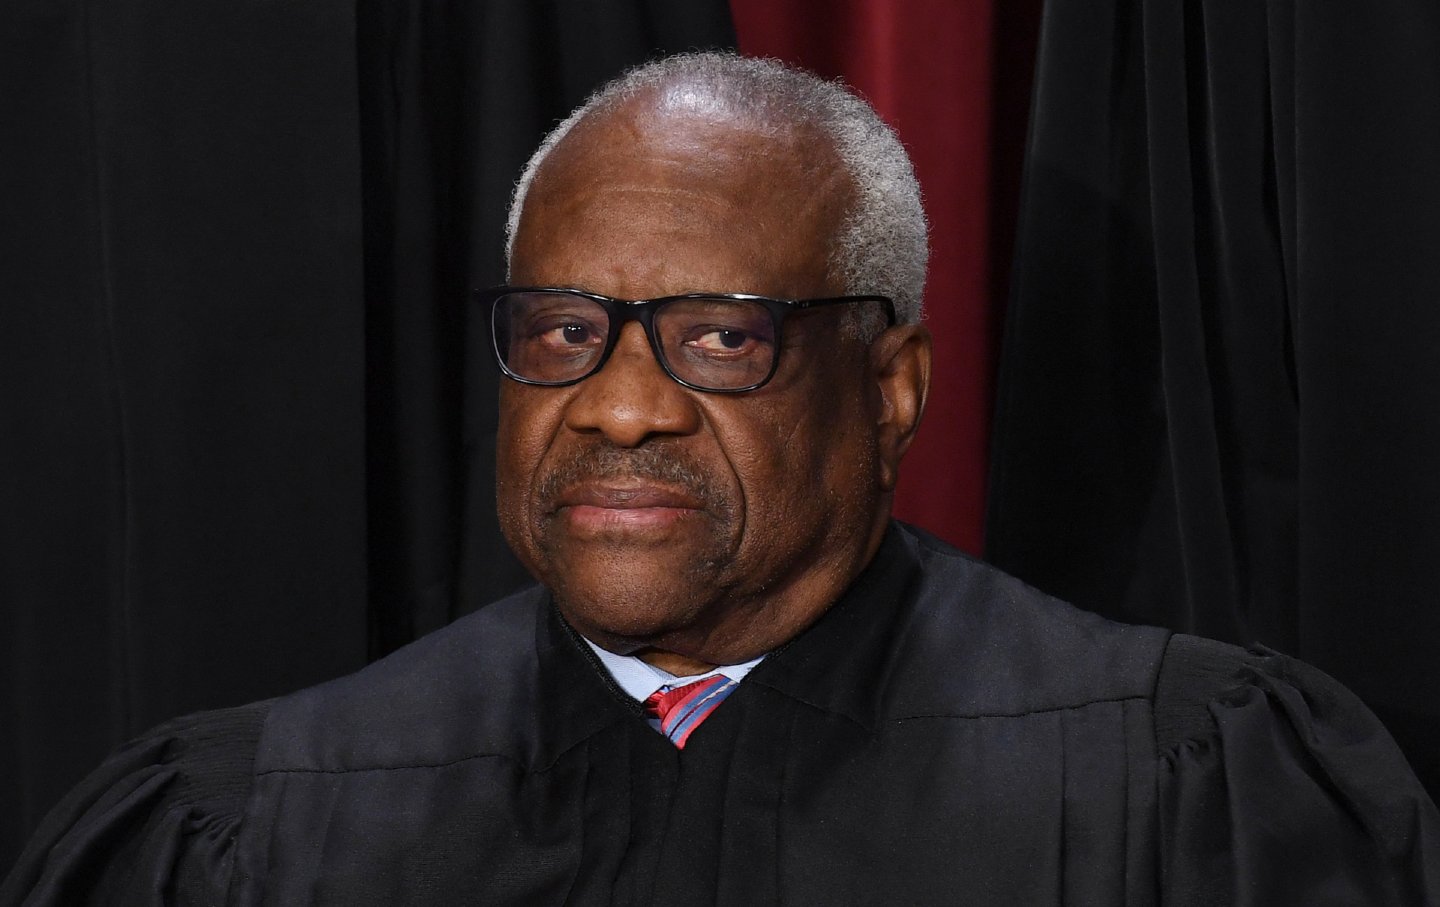 Der stellvertretende Richter am Obersten Gerichtshof der USA, Clarence Thomas, posiert am 7. Oktober 2022 für das offizielle Foto vor dem Obersten Gerichtshof in Washington, DC.